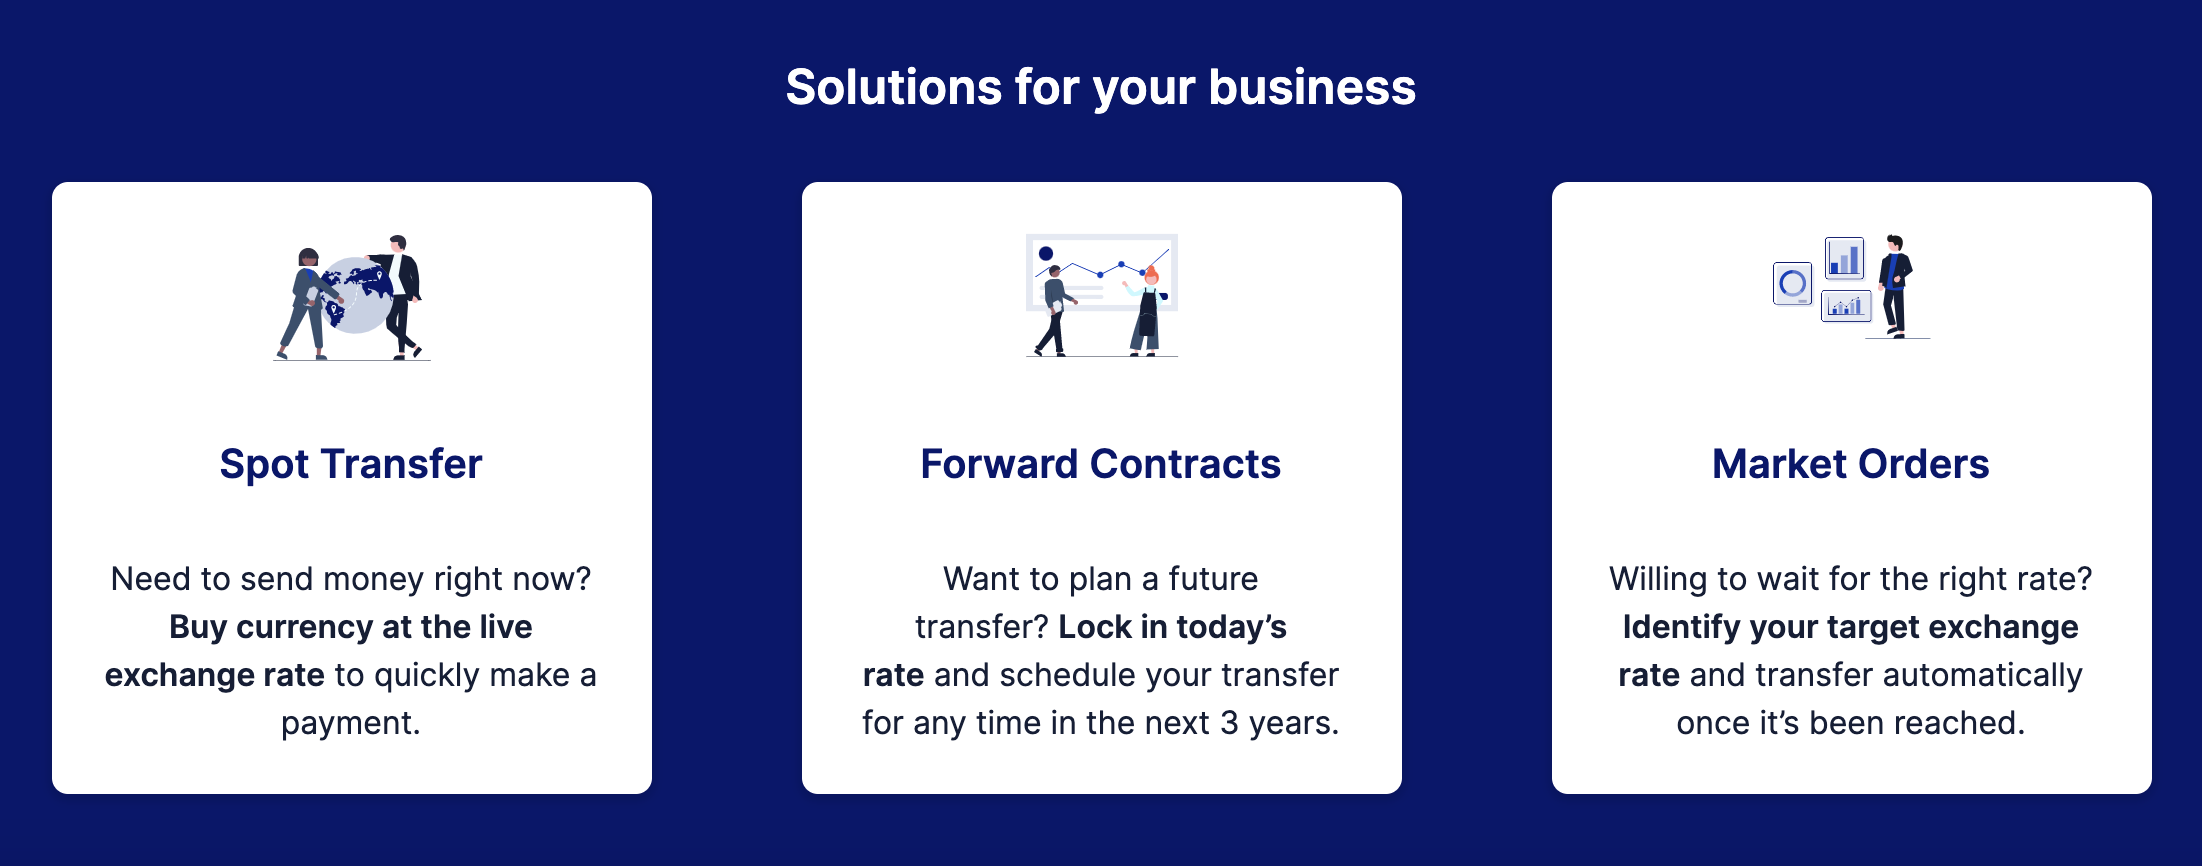 Image qui décrit les contrats au comptant pour les transferts immédiats, les contrats à terme pour planifier les transferts futurs, et les ordres au marché, qui permettent d'attendre qu'un taux vous convienne
